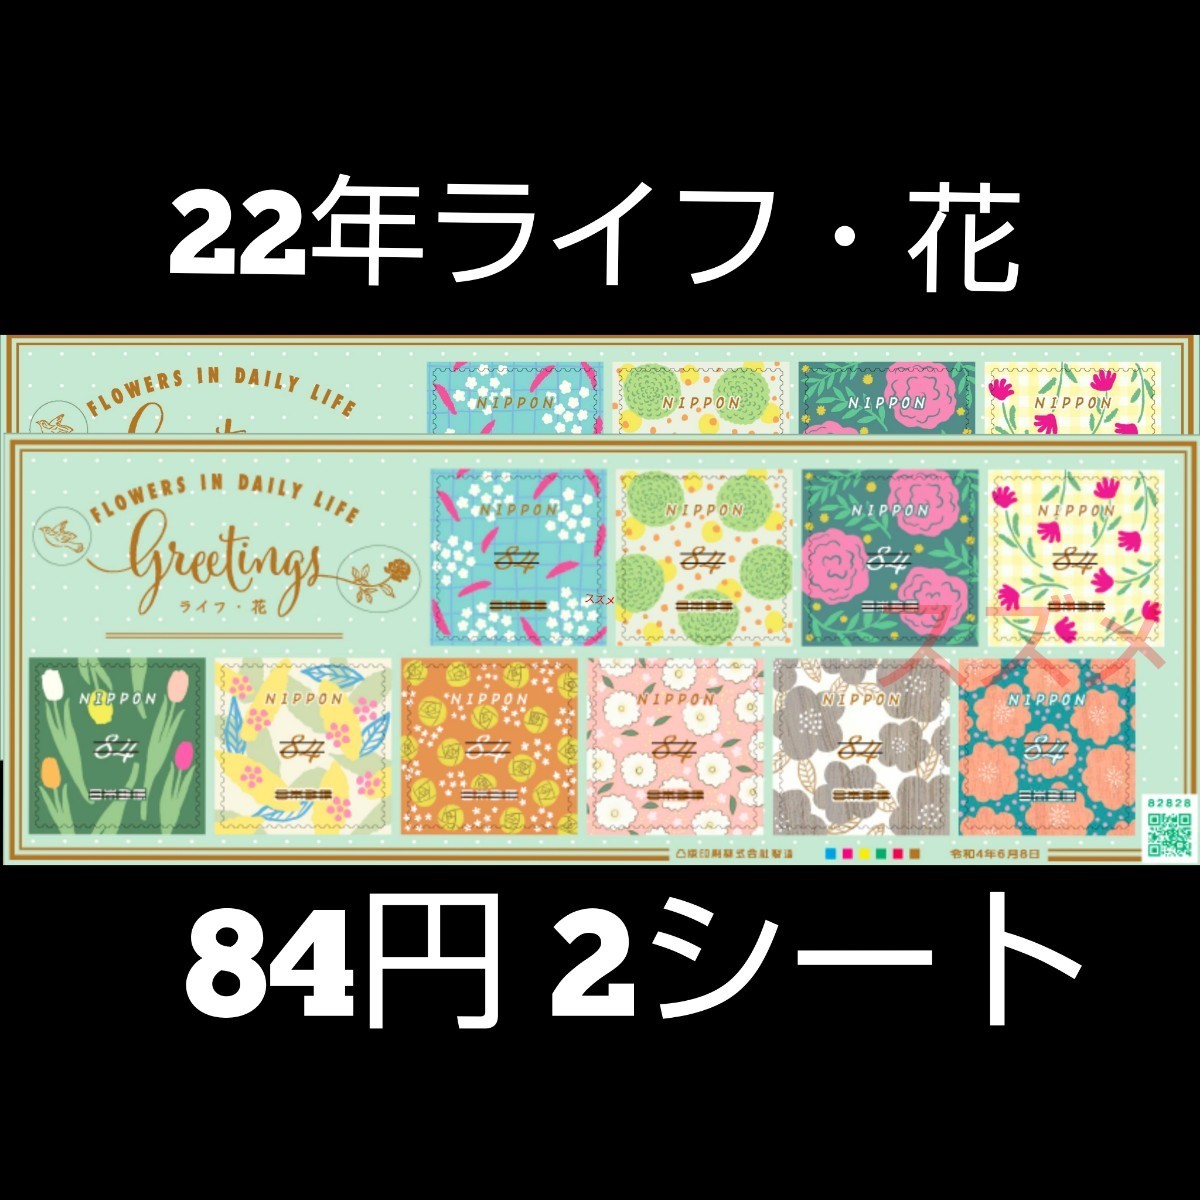 2022年ライフ・花 63円 シール切手 3シート +84円2シート  記念切手